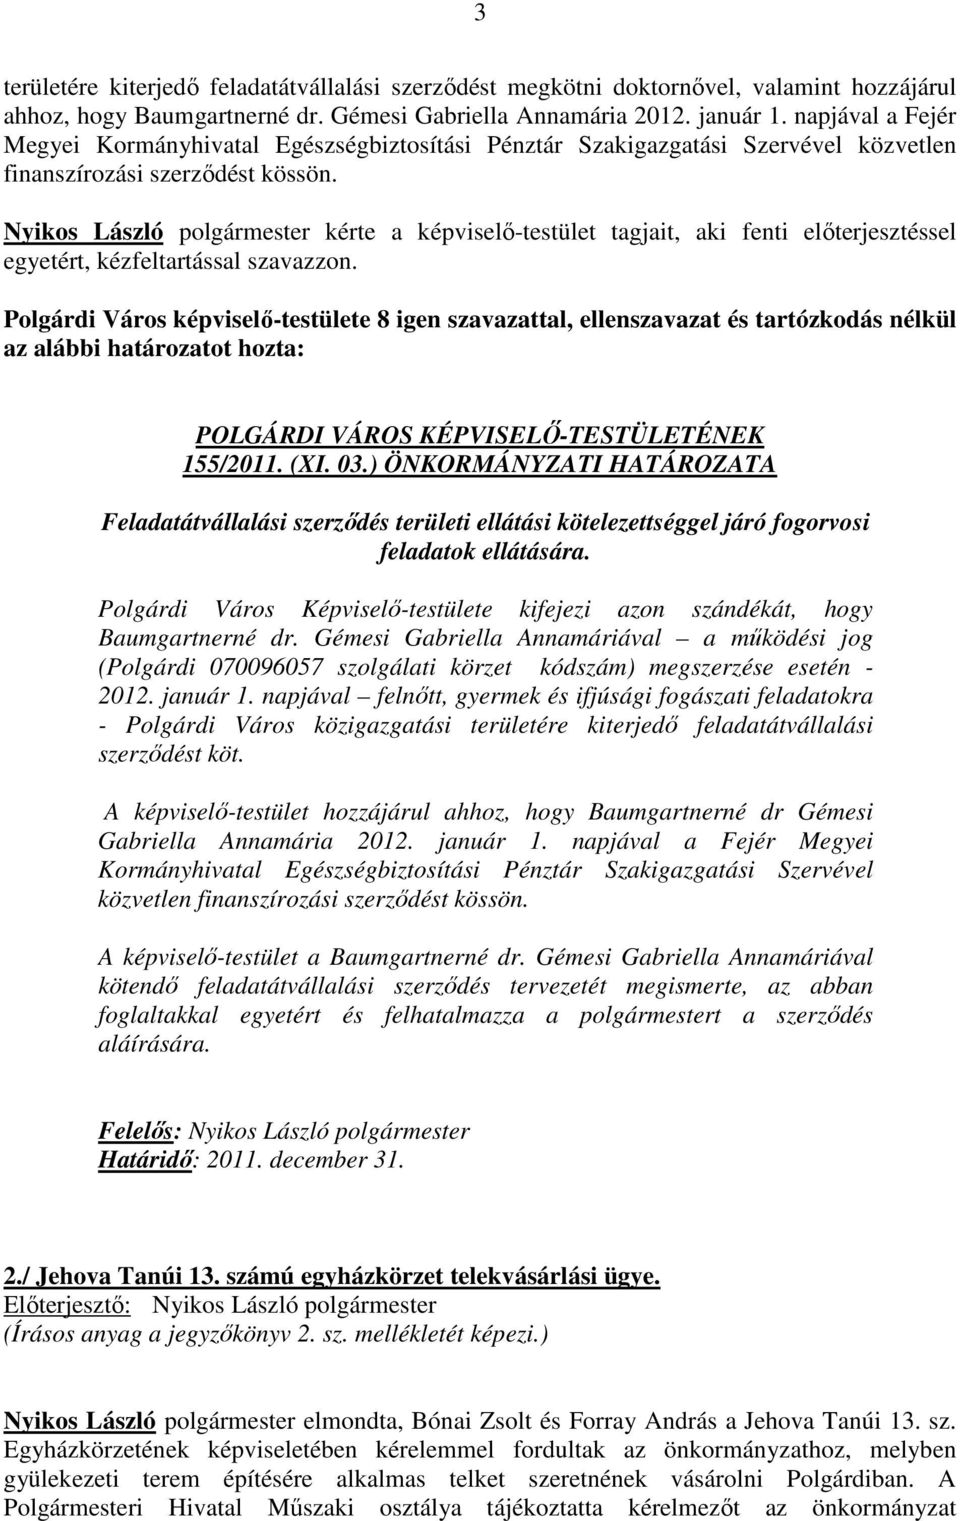 Nyikos László polgármester kérte a képviselő-testület tagjait, aki fenti előterjesztéssel egyetért, kézfeltartással szavazzon.